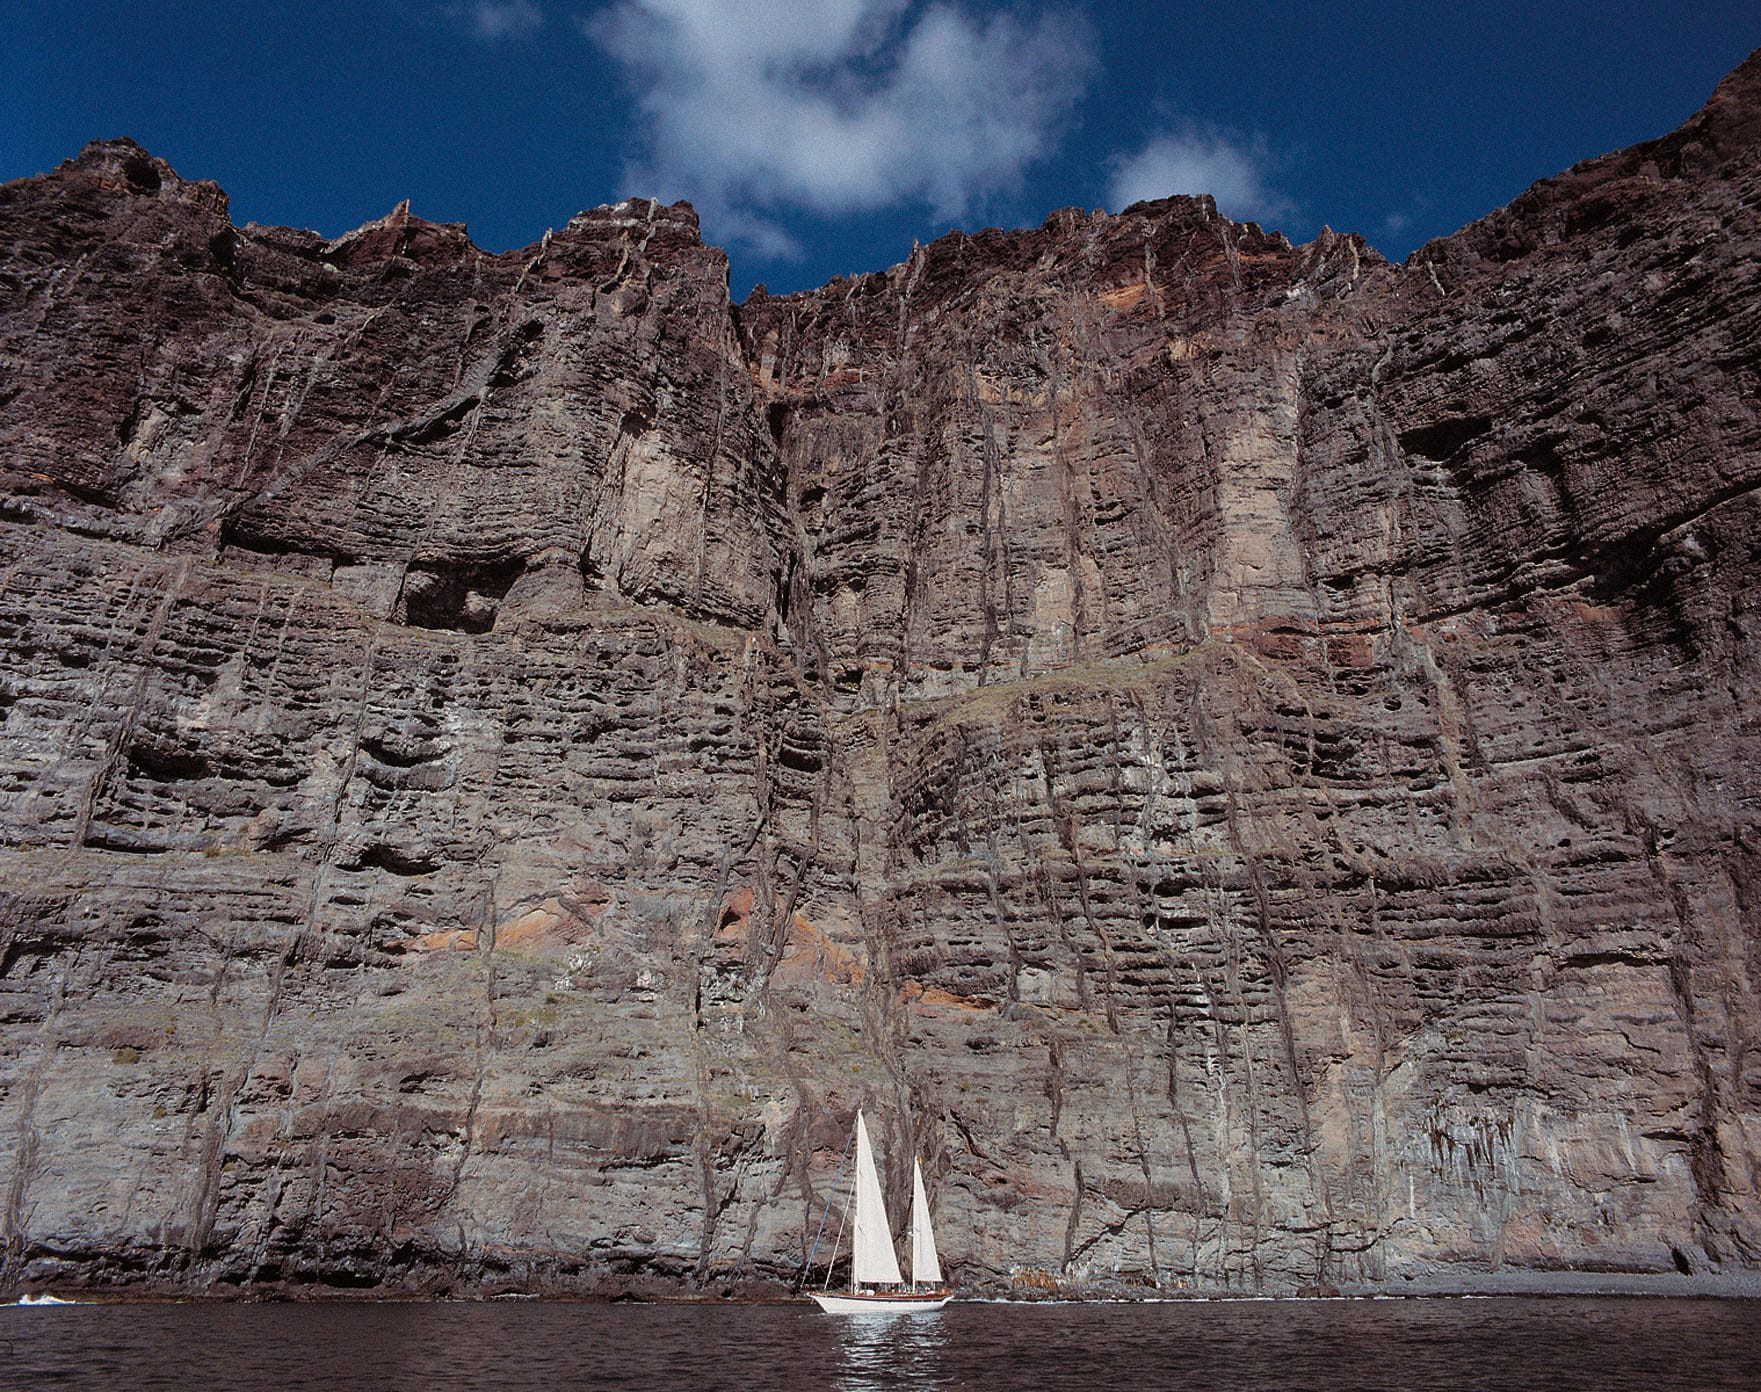 Los Gigantes im Westen der Kanareninsel Teneriffa ist ein beliebter Ferienort, der seine Popularität dem Acantilado de los Gigantes (Steinfels der Riesen) verdankt.